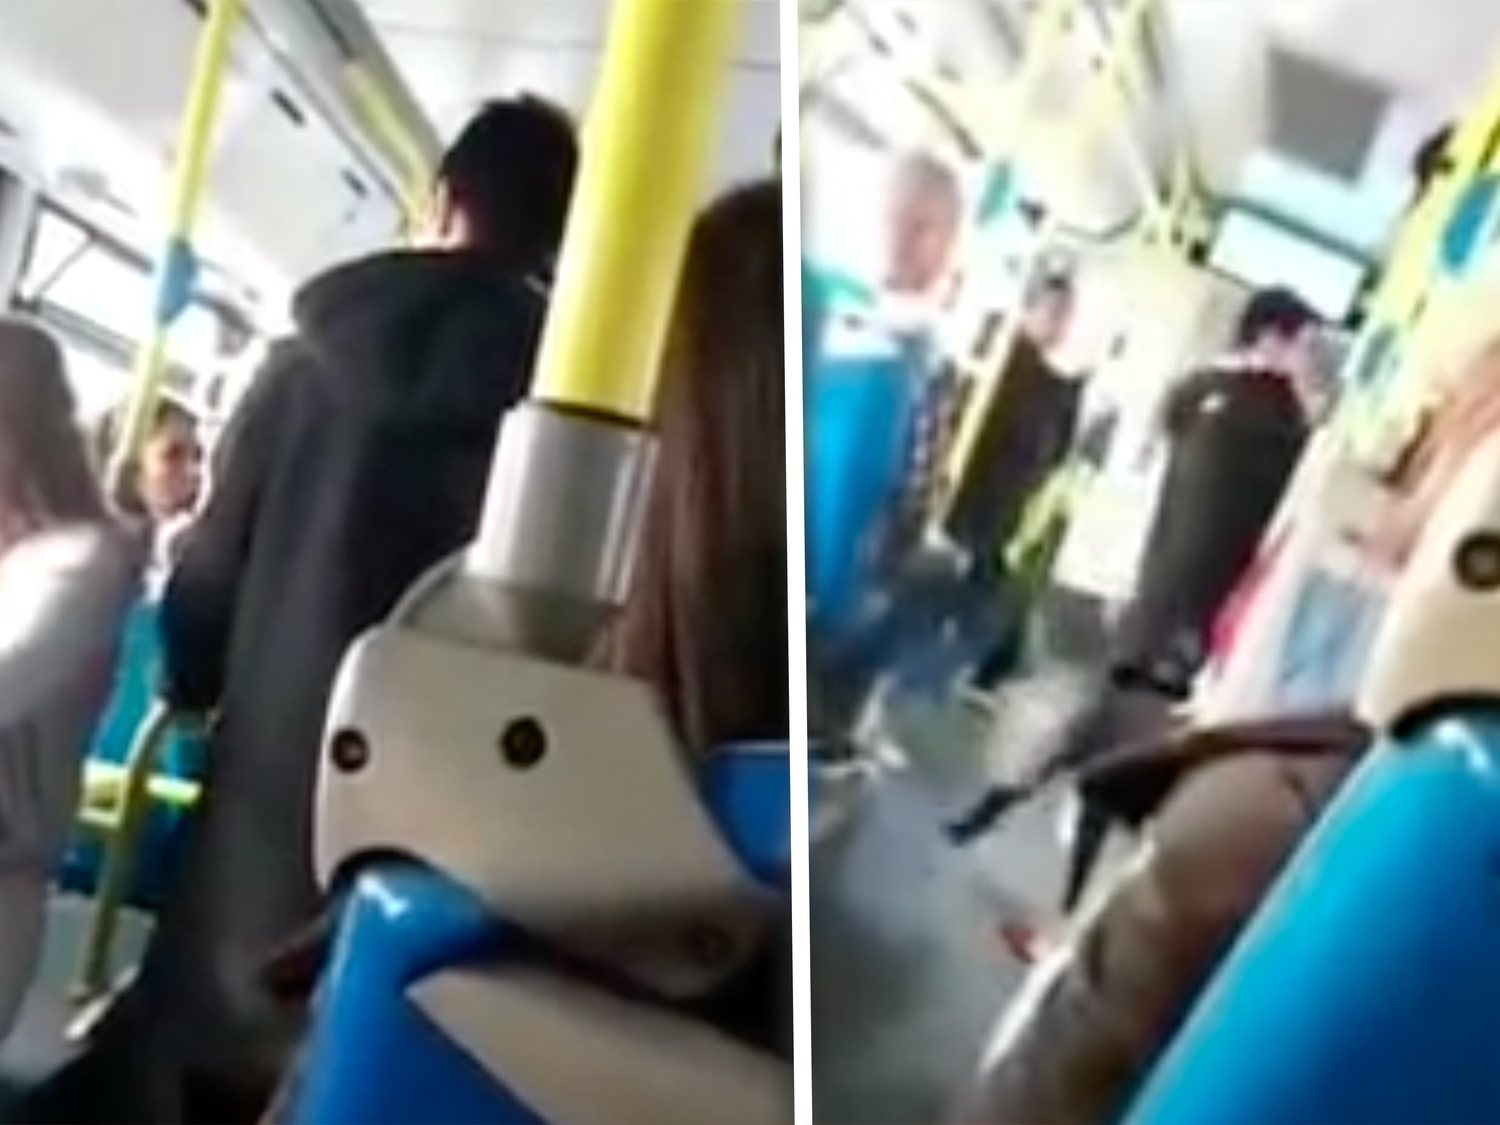 Golpean a una mujer latina en un autobús de Madrid sin que nadie actúe: "Vete a tu puto país"